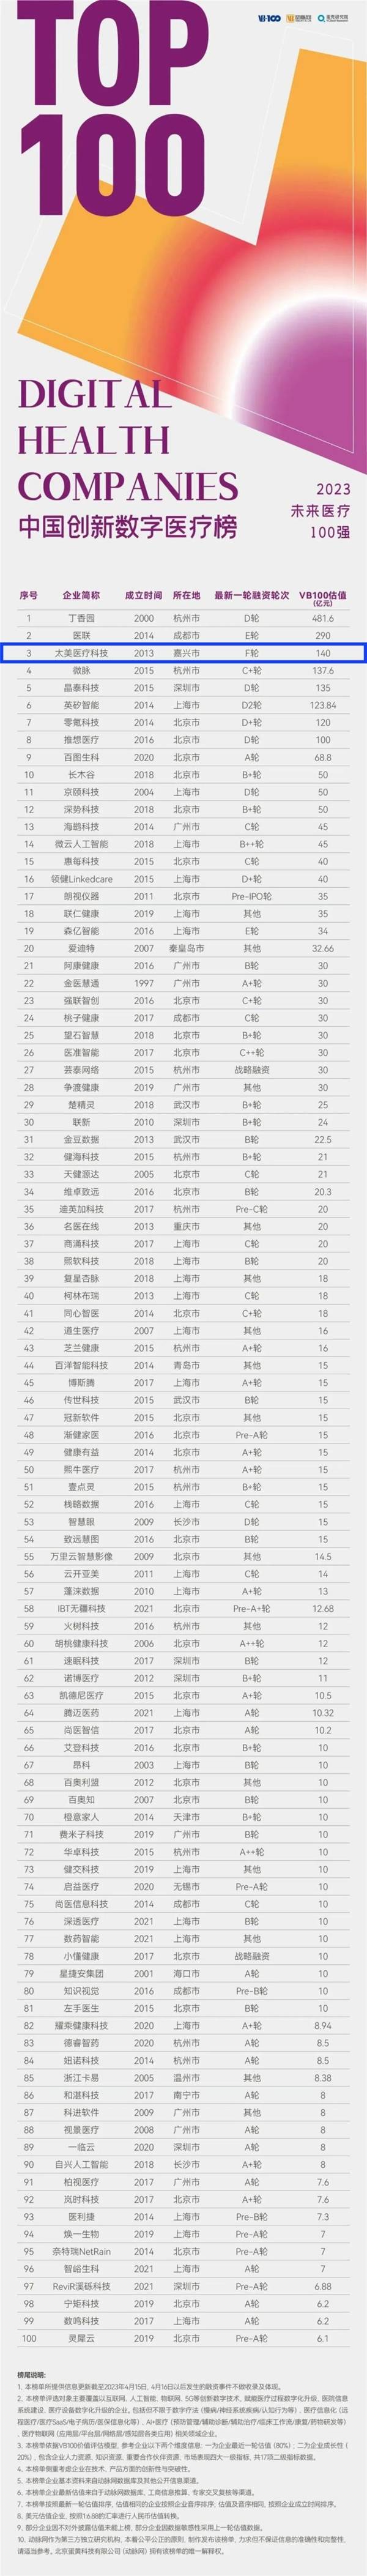 2米乐m6023未来医疗100强发布 太美医疗科技再度荣登中国创新数字榜(图1)